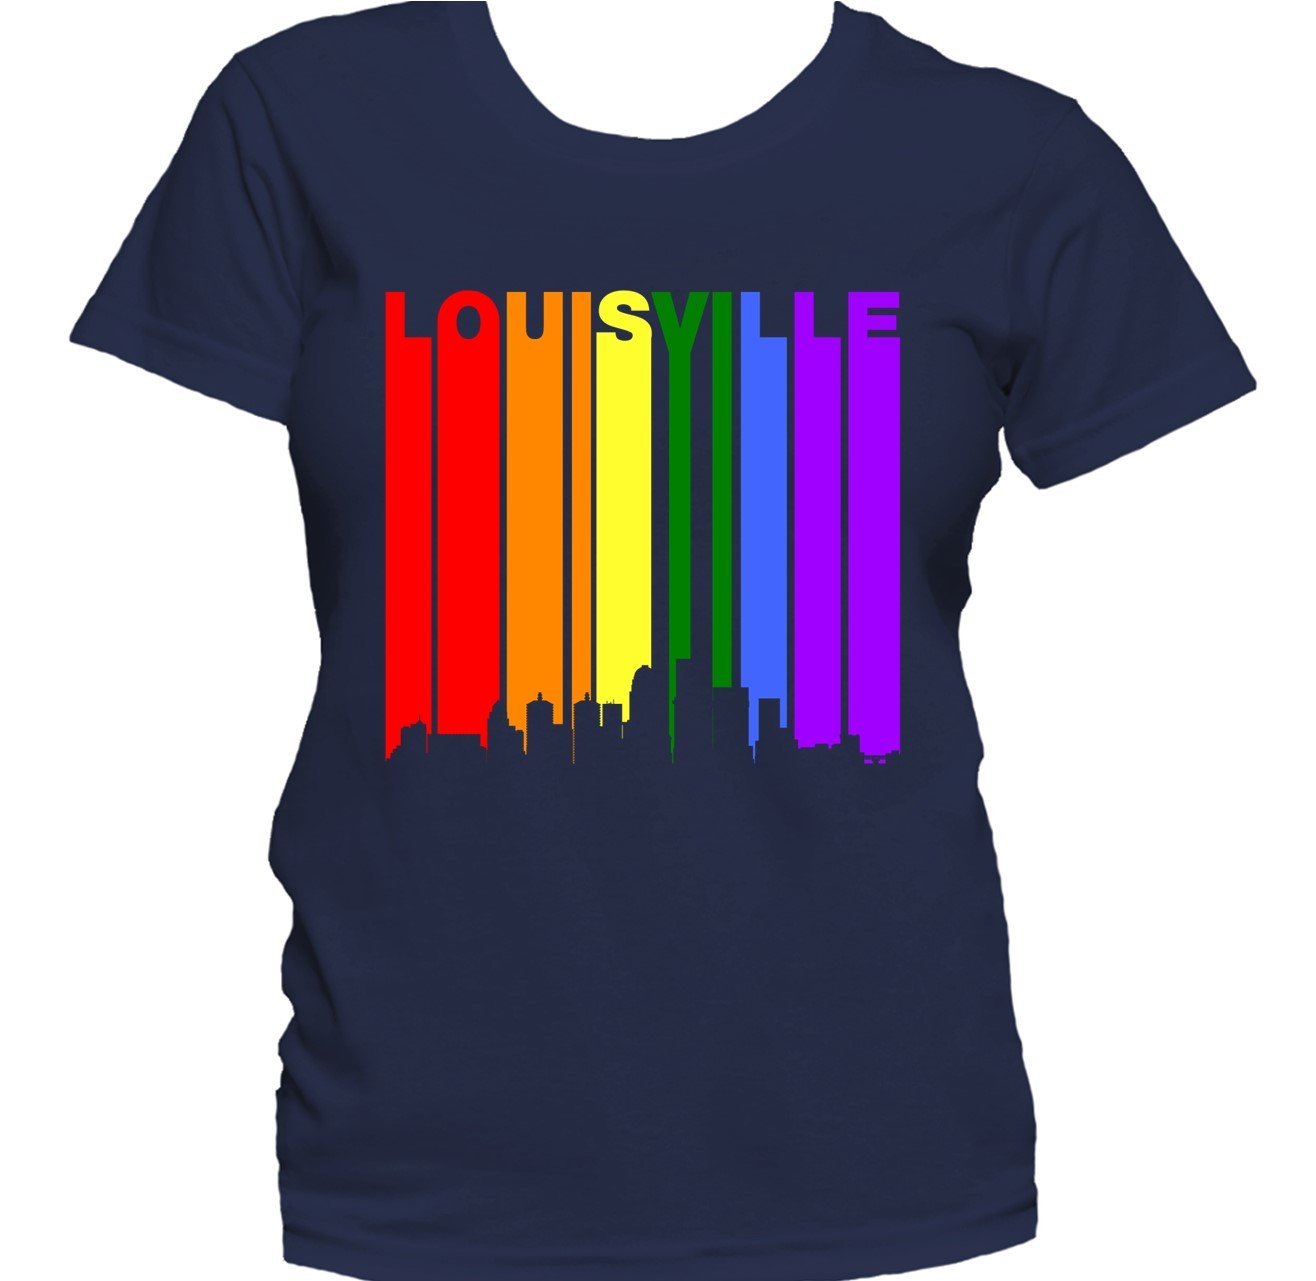 Lou KY T-shirt